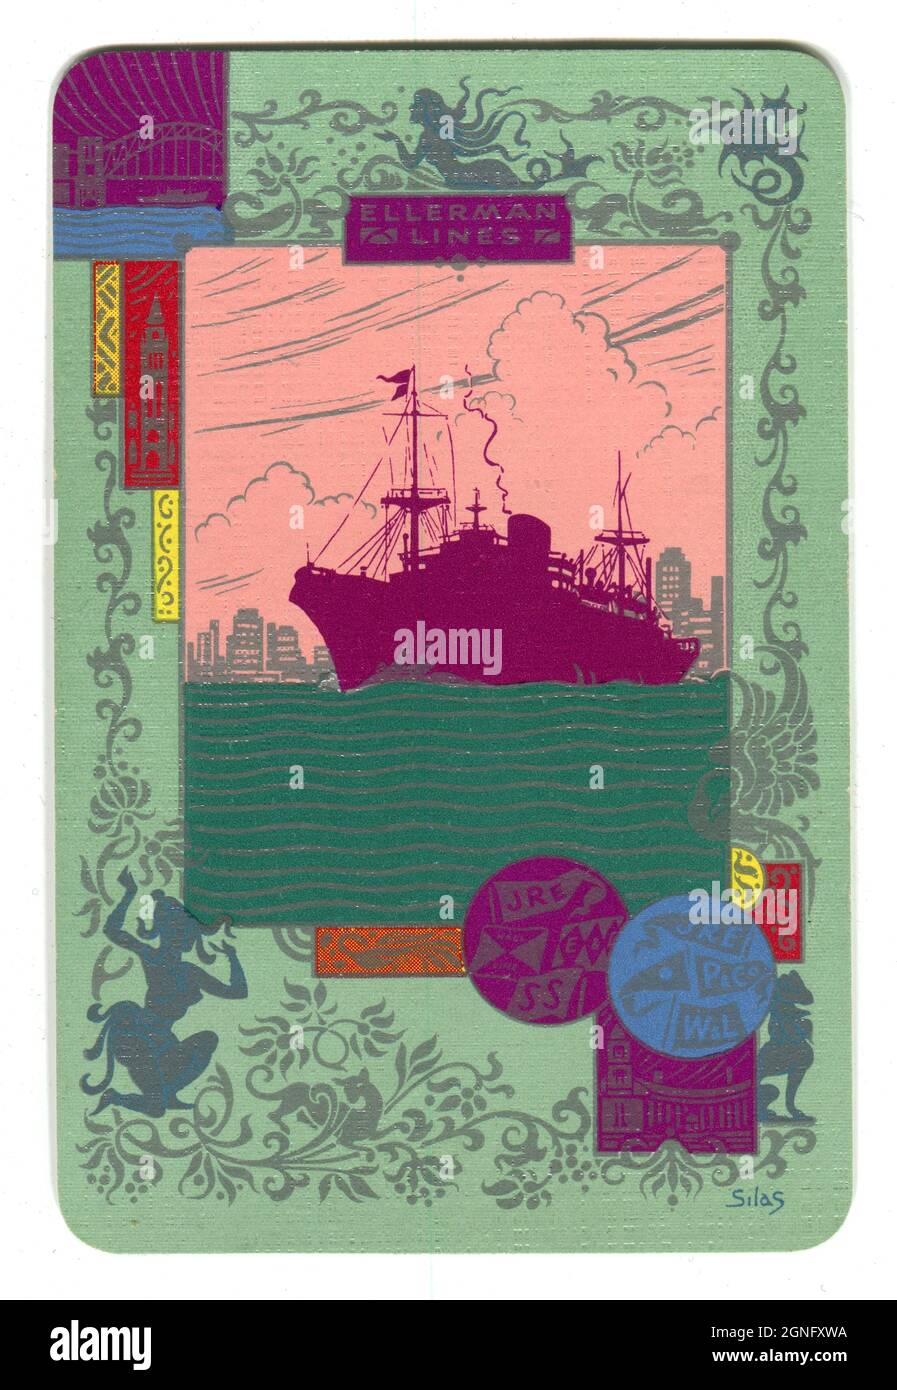 Eine alte Spielkarte aus den 1930er Jahren, die die britische Reederei ‘Ellerman Lines’ fördert. Das attraktive Art déco-Design zeigt die Silhouette eines Schiffes von Ellerman Lines, das an der Skyline von New York vorbeisegelt. Das Design beinhaltet auch die Flaggen der anderen Reedereien, die Ellerman übernommen hatte. Stockfoto